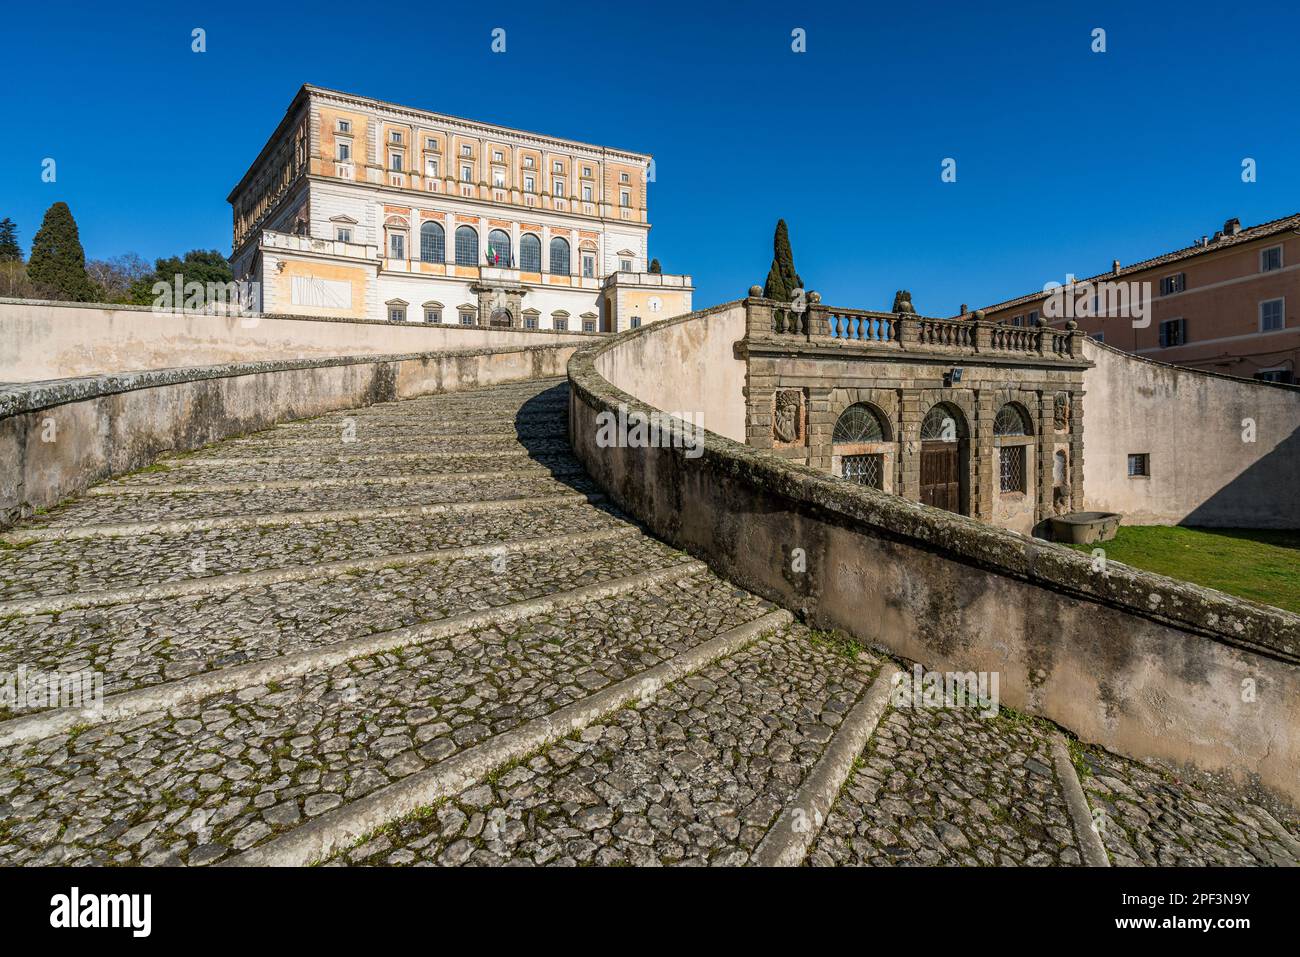 L'imponente Palazzo Farnese a Caprarola in una soleggiata mattinata invernale. Provincia di Viterbo, Lazio, Italia. Foto Stock